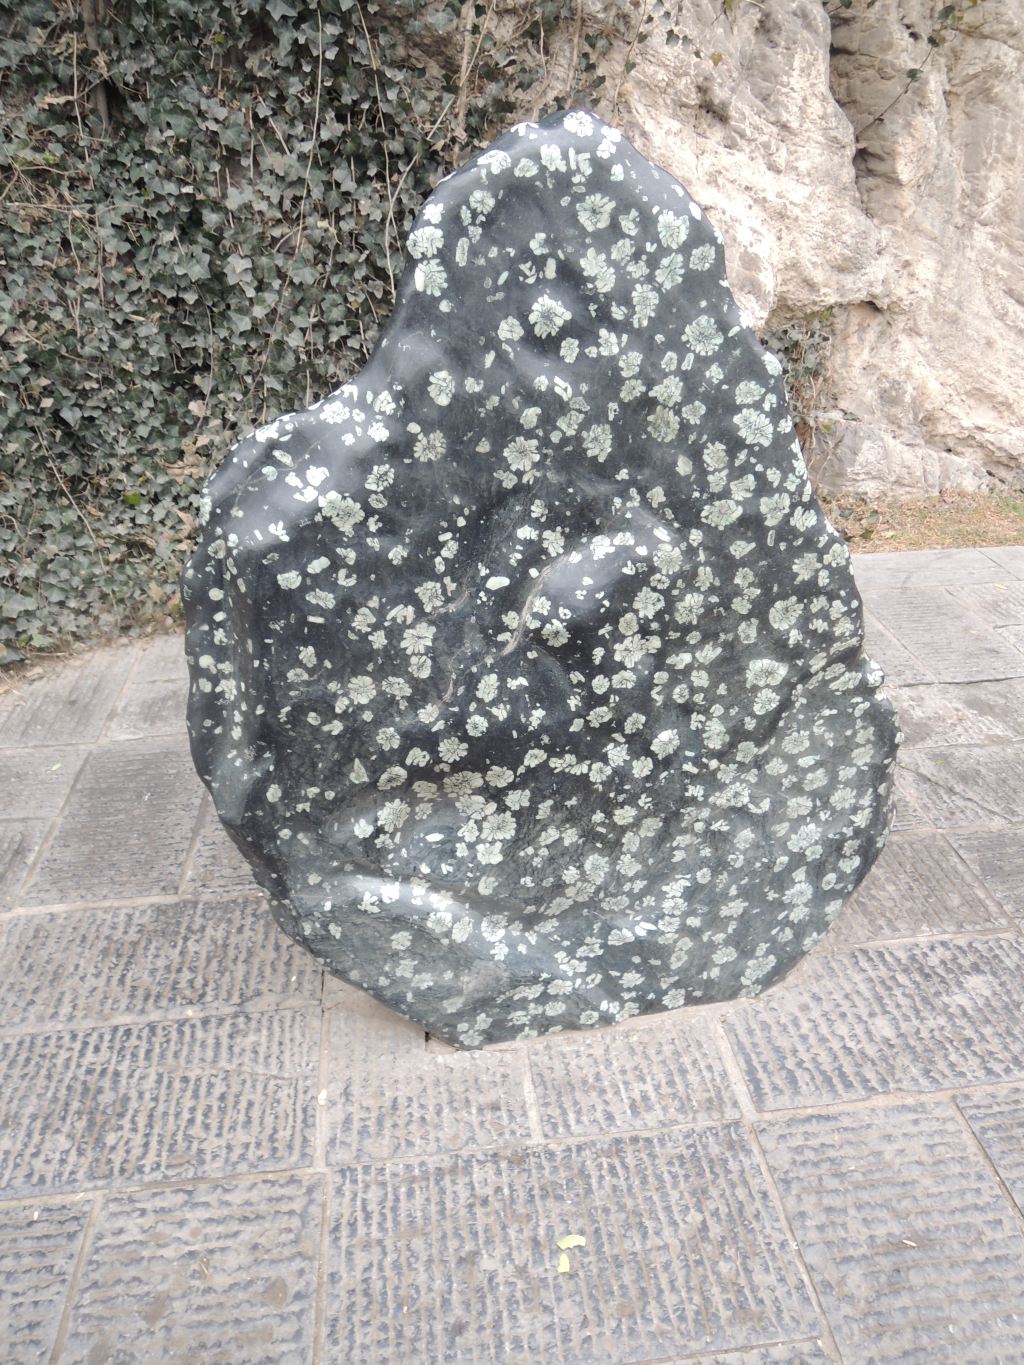 走着走着,有看到一块奇怪的石头,是化石?